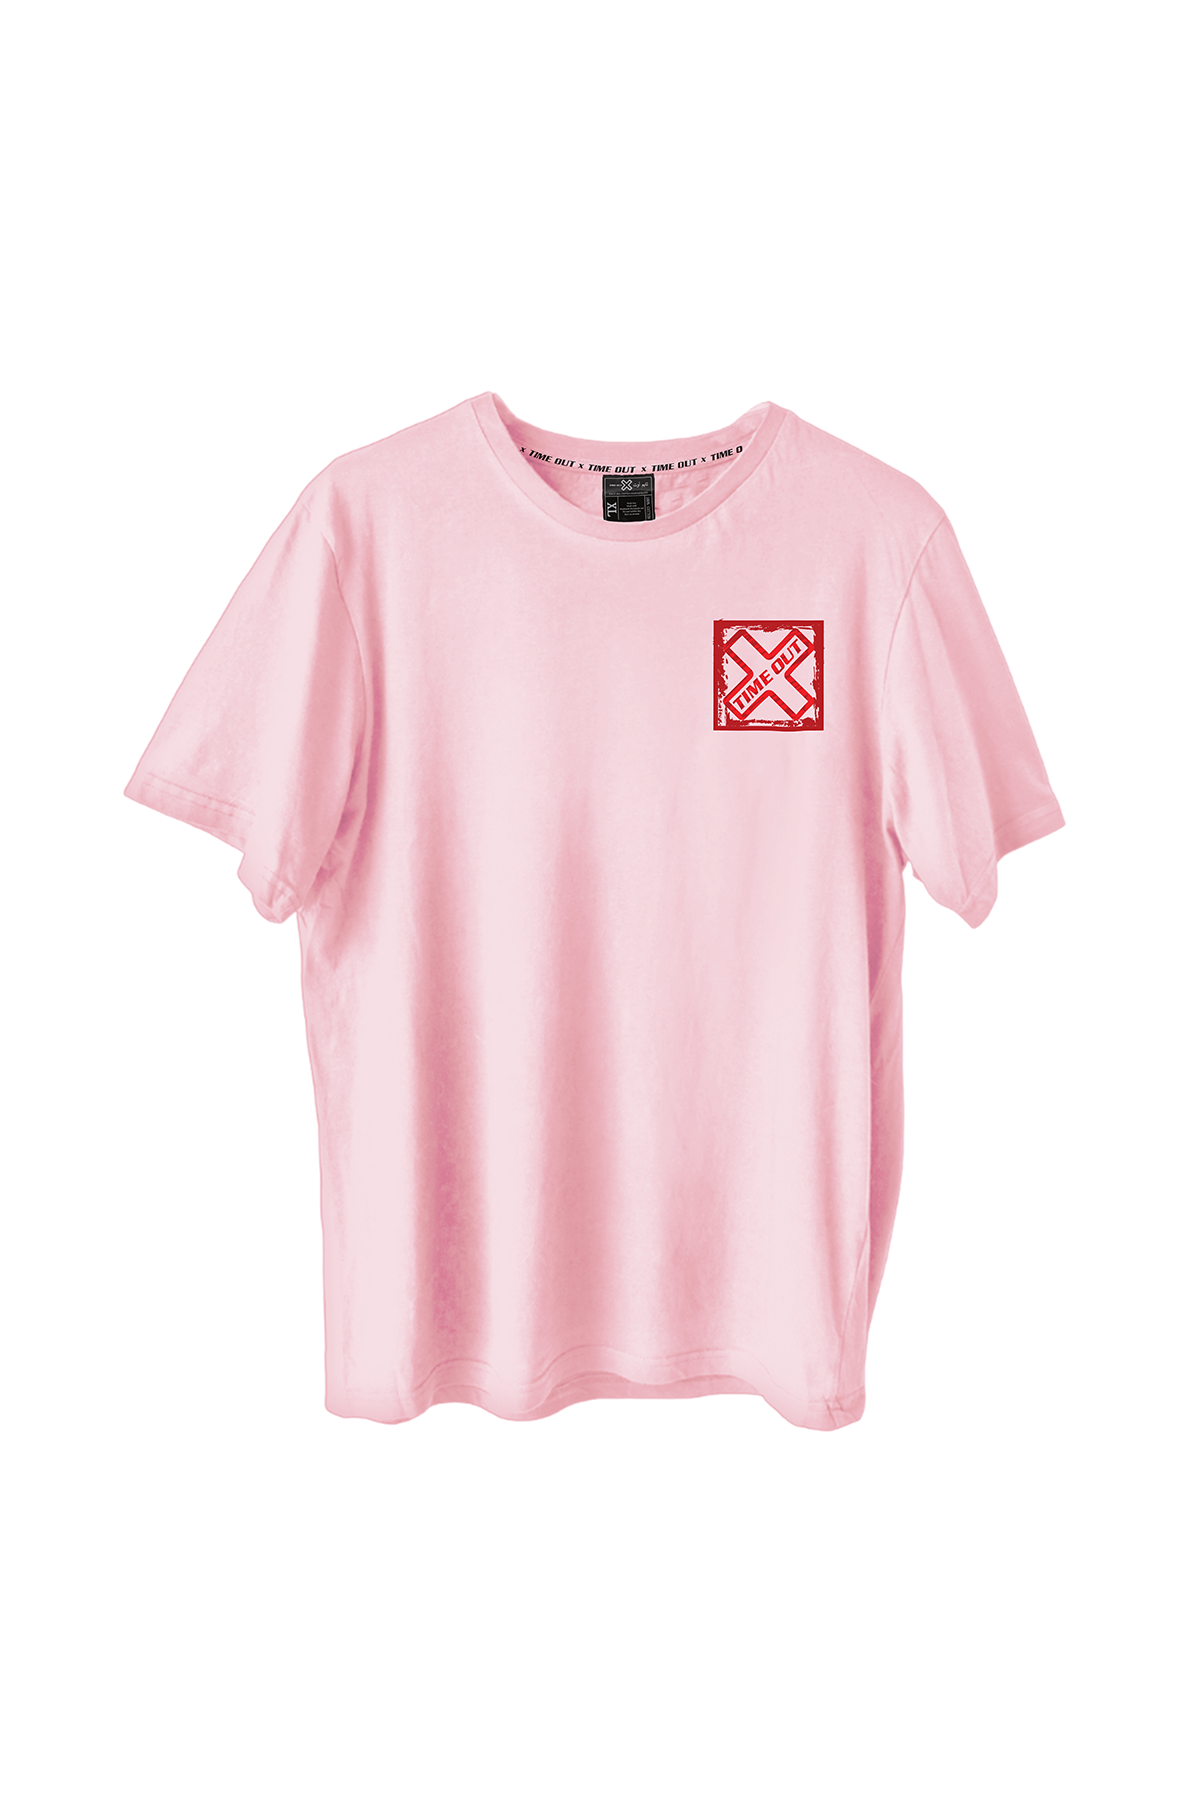 Time-Out-X-Signature-Men’s-Pastel-Pink-Cotton-T-Shirt—Front